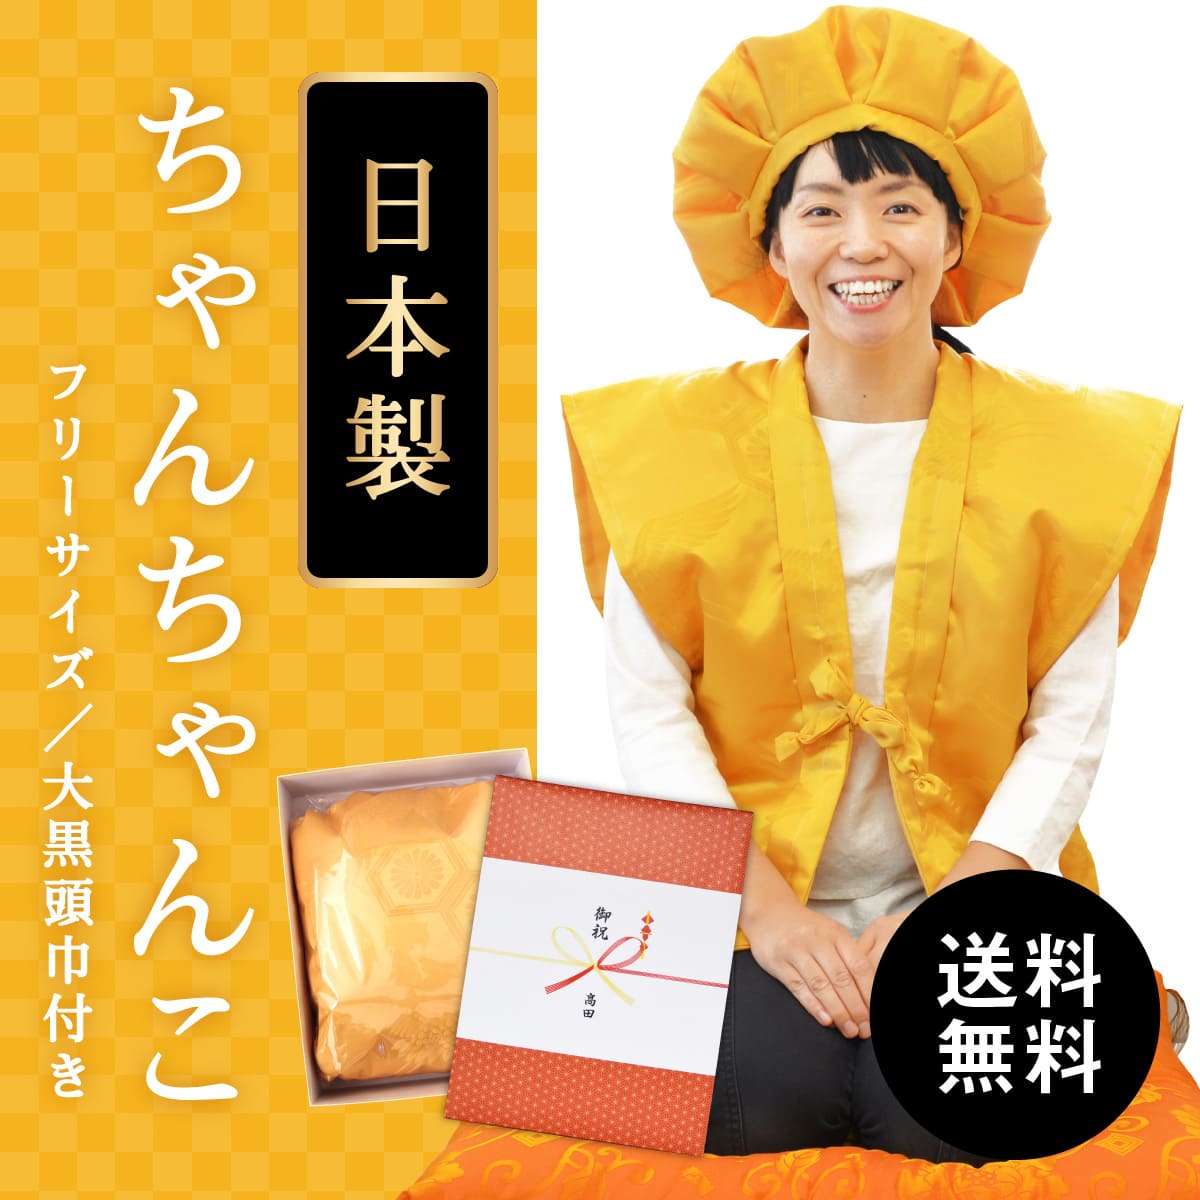 傘寿・米寿 ちゃんちゃんこ 黄色 亀甲鶴 高品質の日本製 フリーサイズ